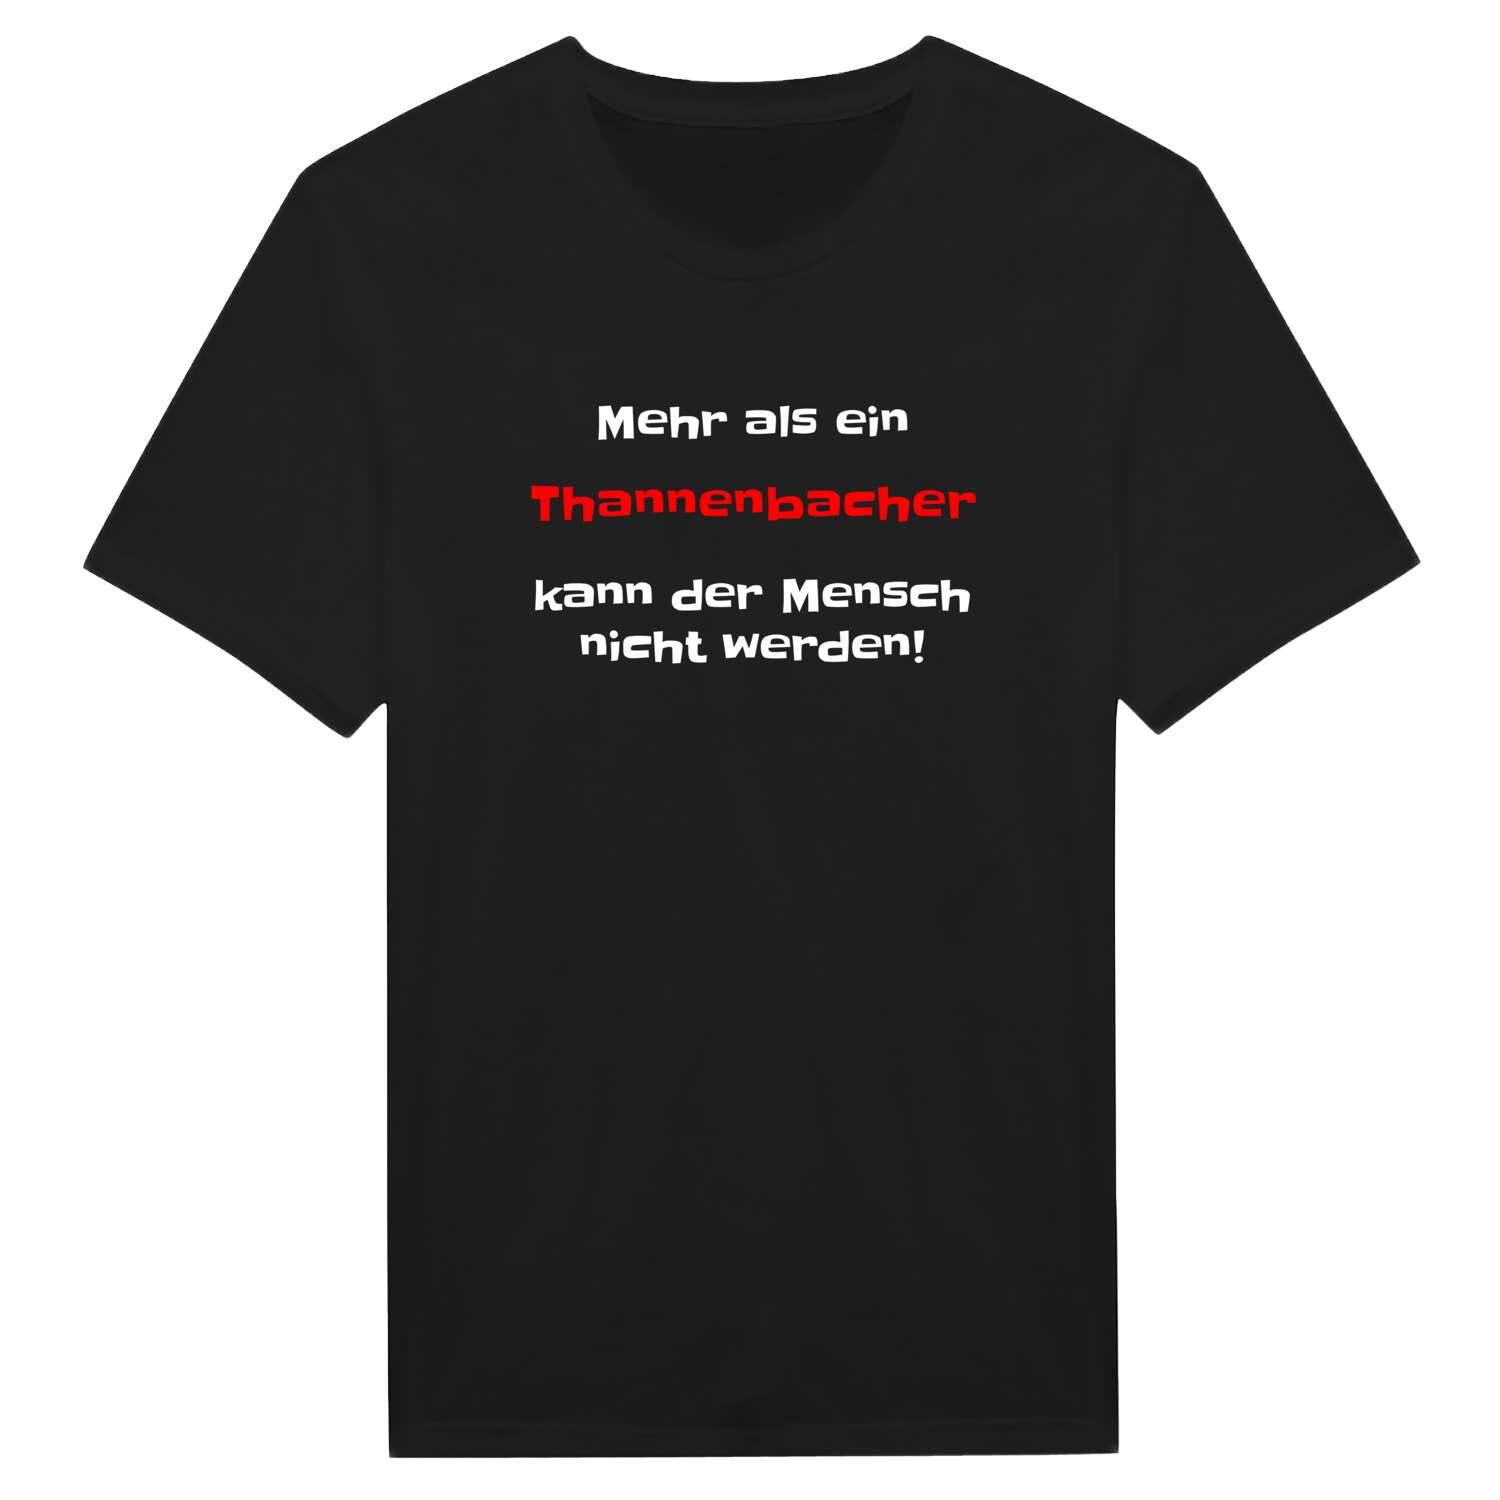 Thannenbach T-Shirt »Mehr als ein«